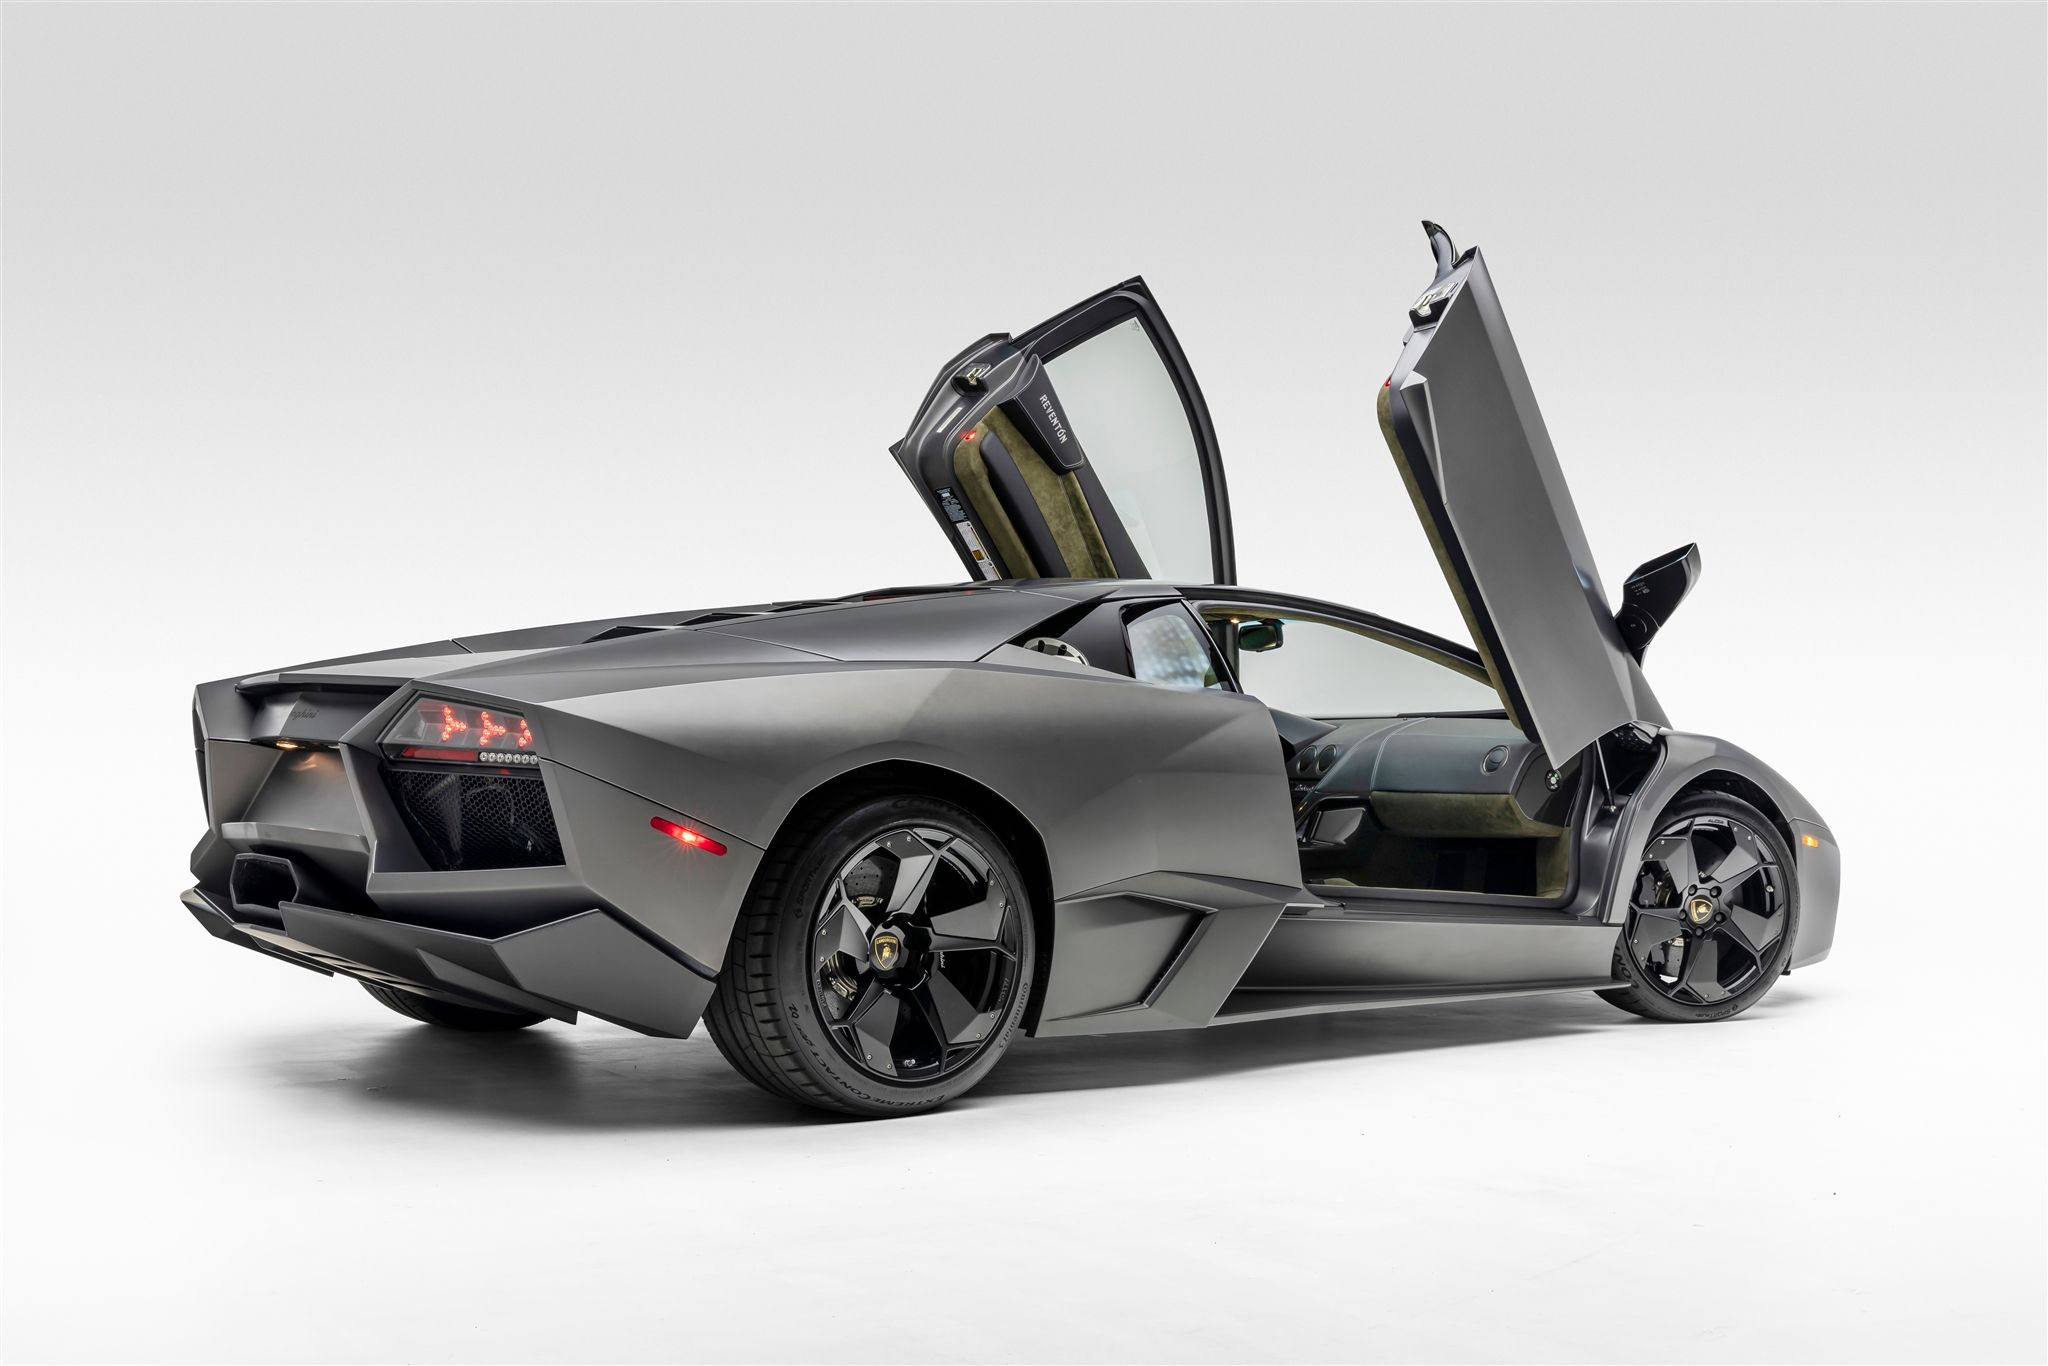 2008 Lamborghini Reventon Coupe Is Our Bring a Trailer Auction Pick